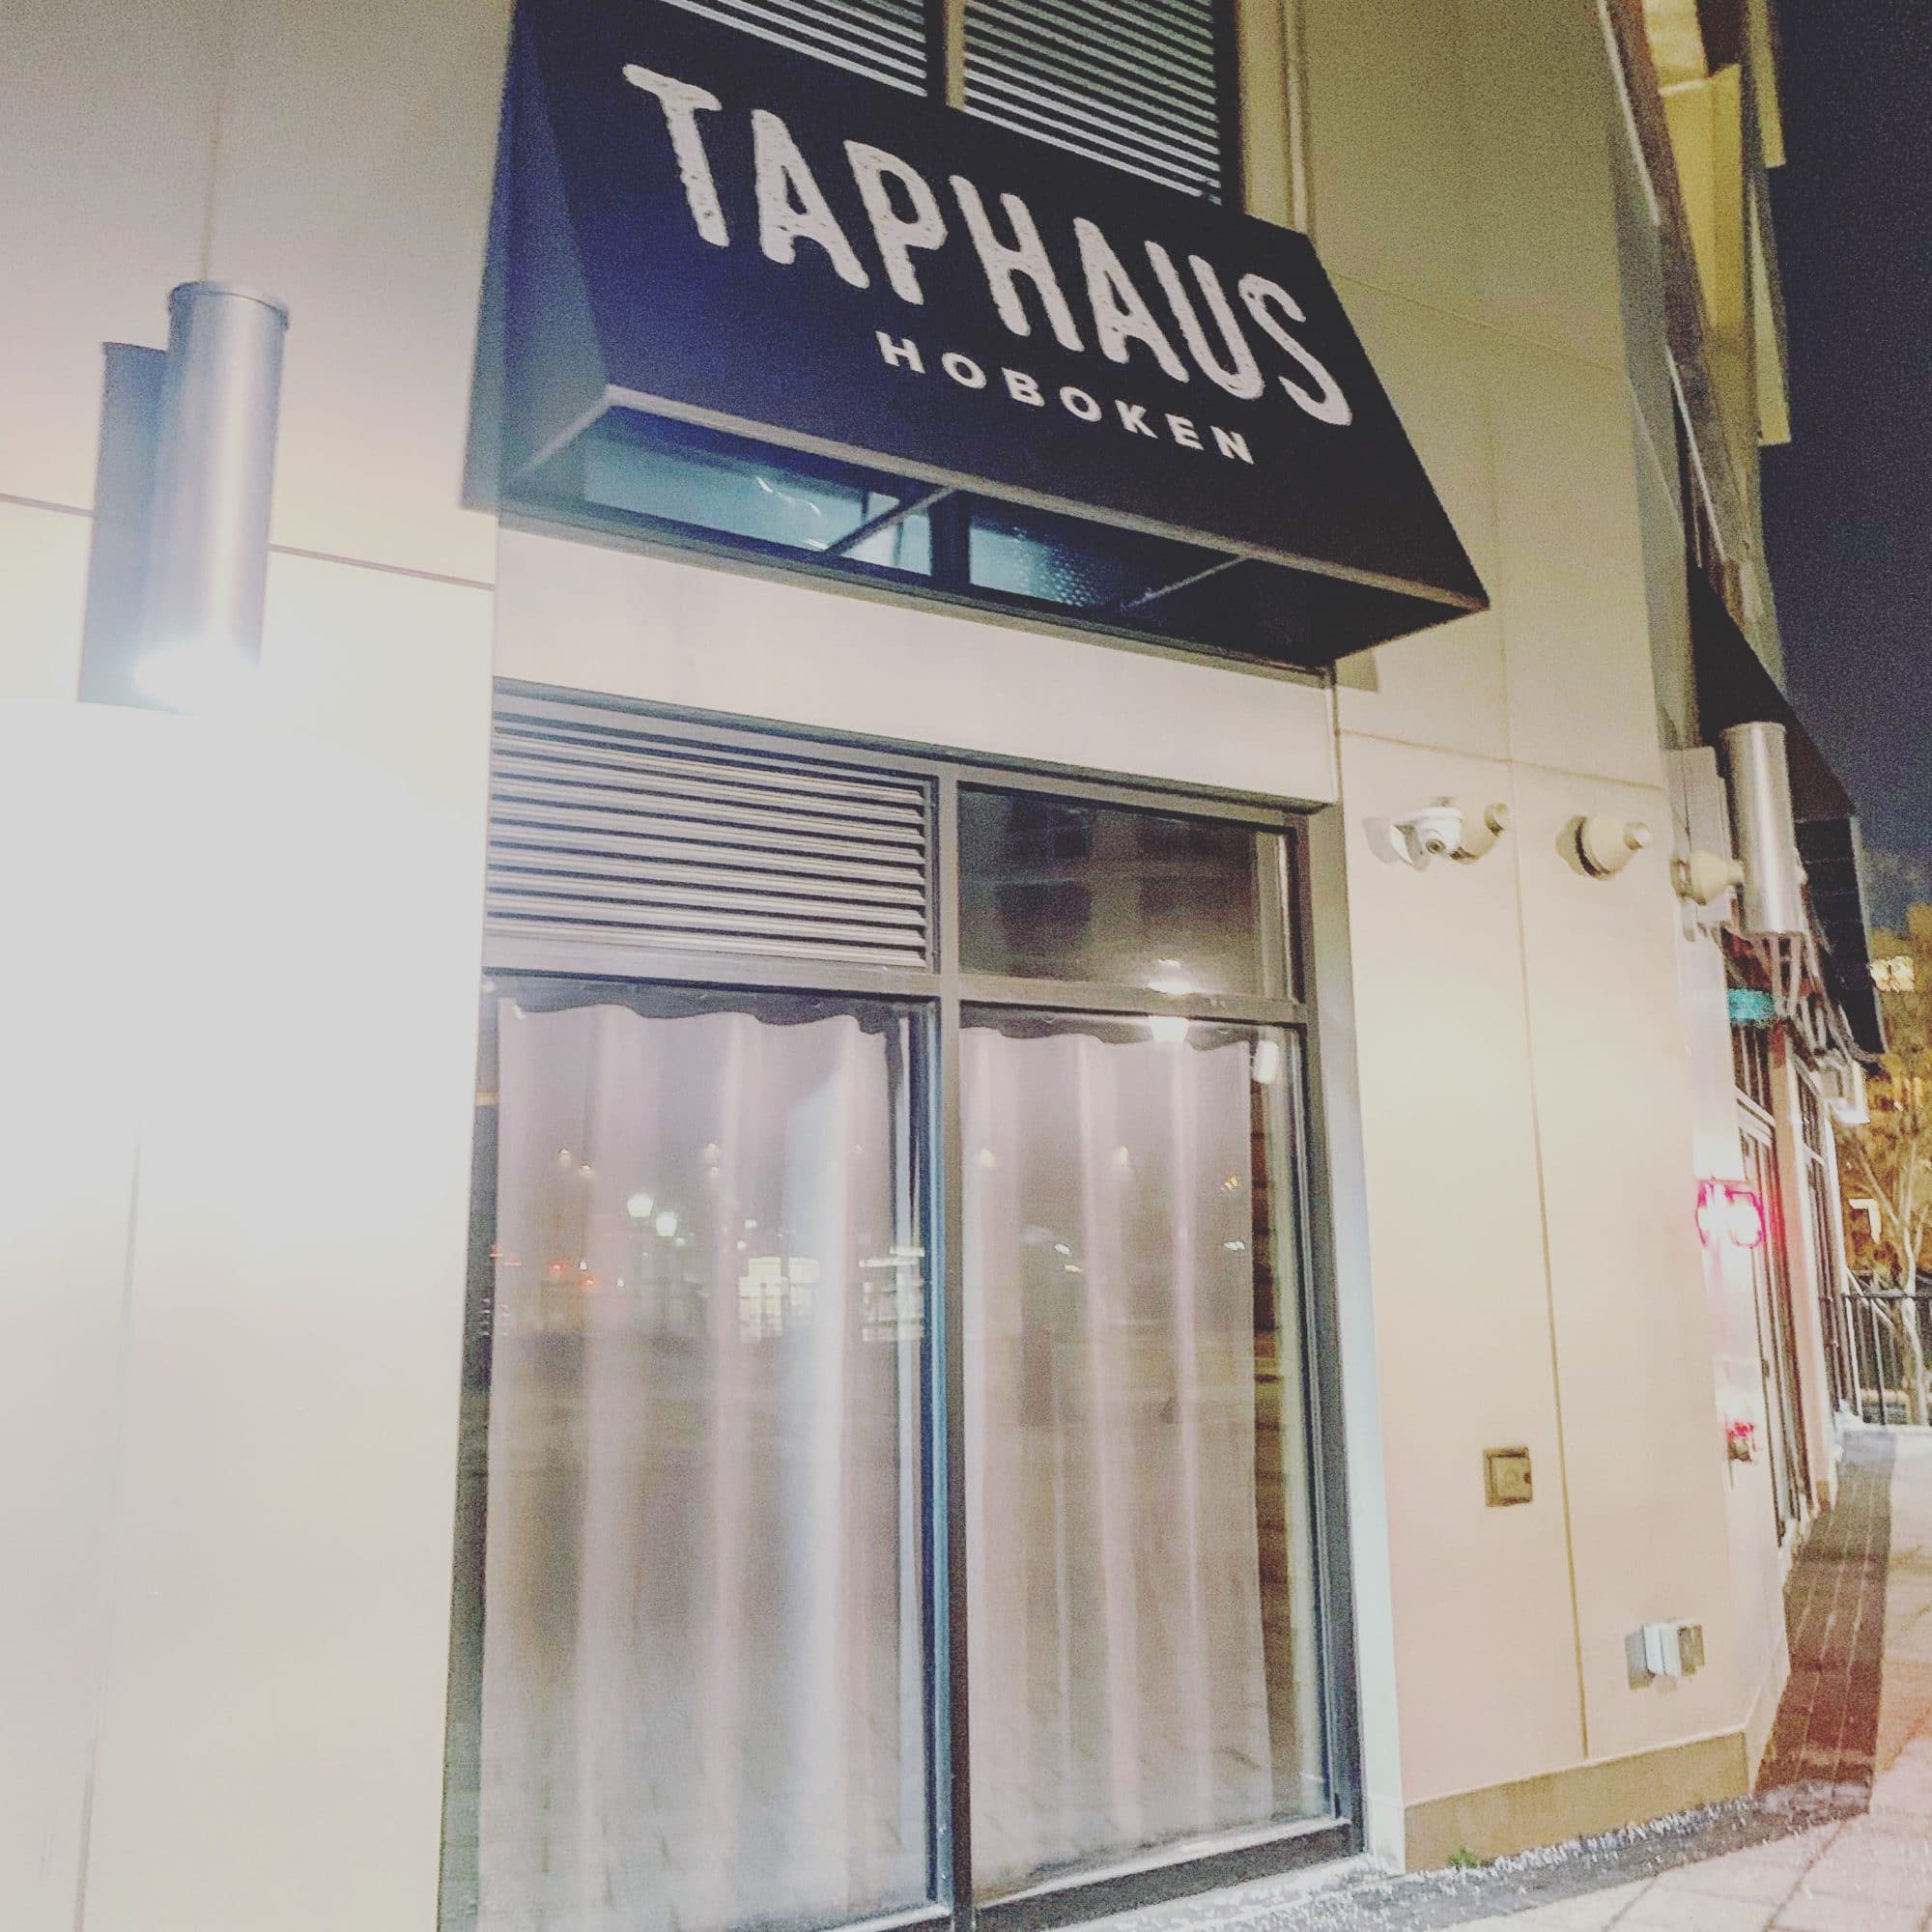 taphaus hoboken prive new restaurant